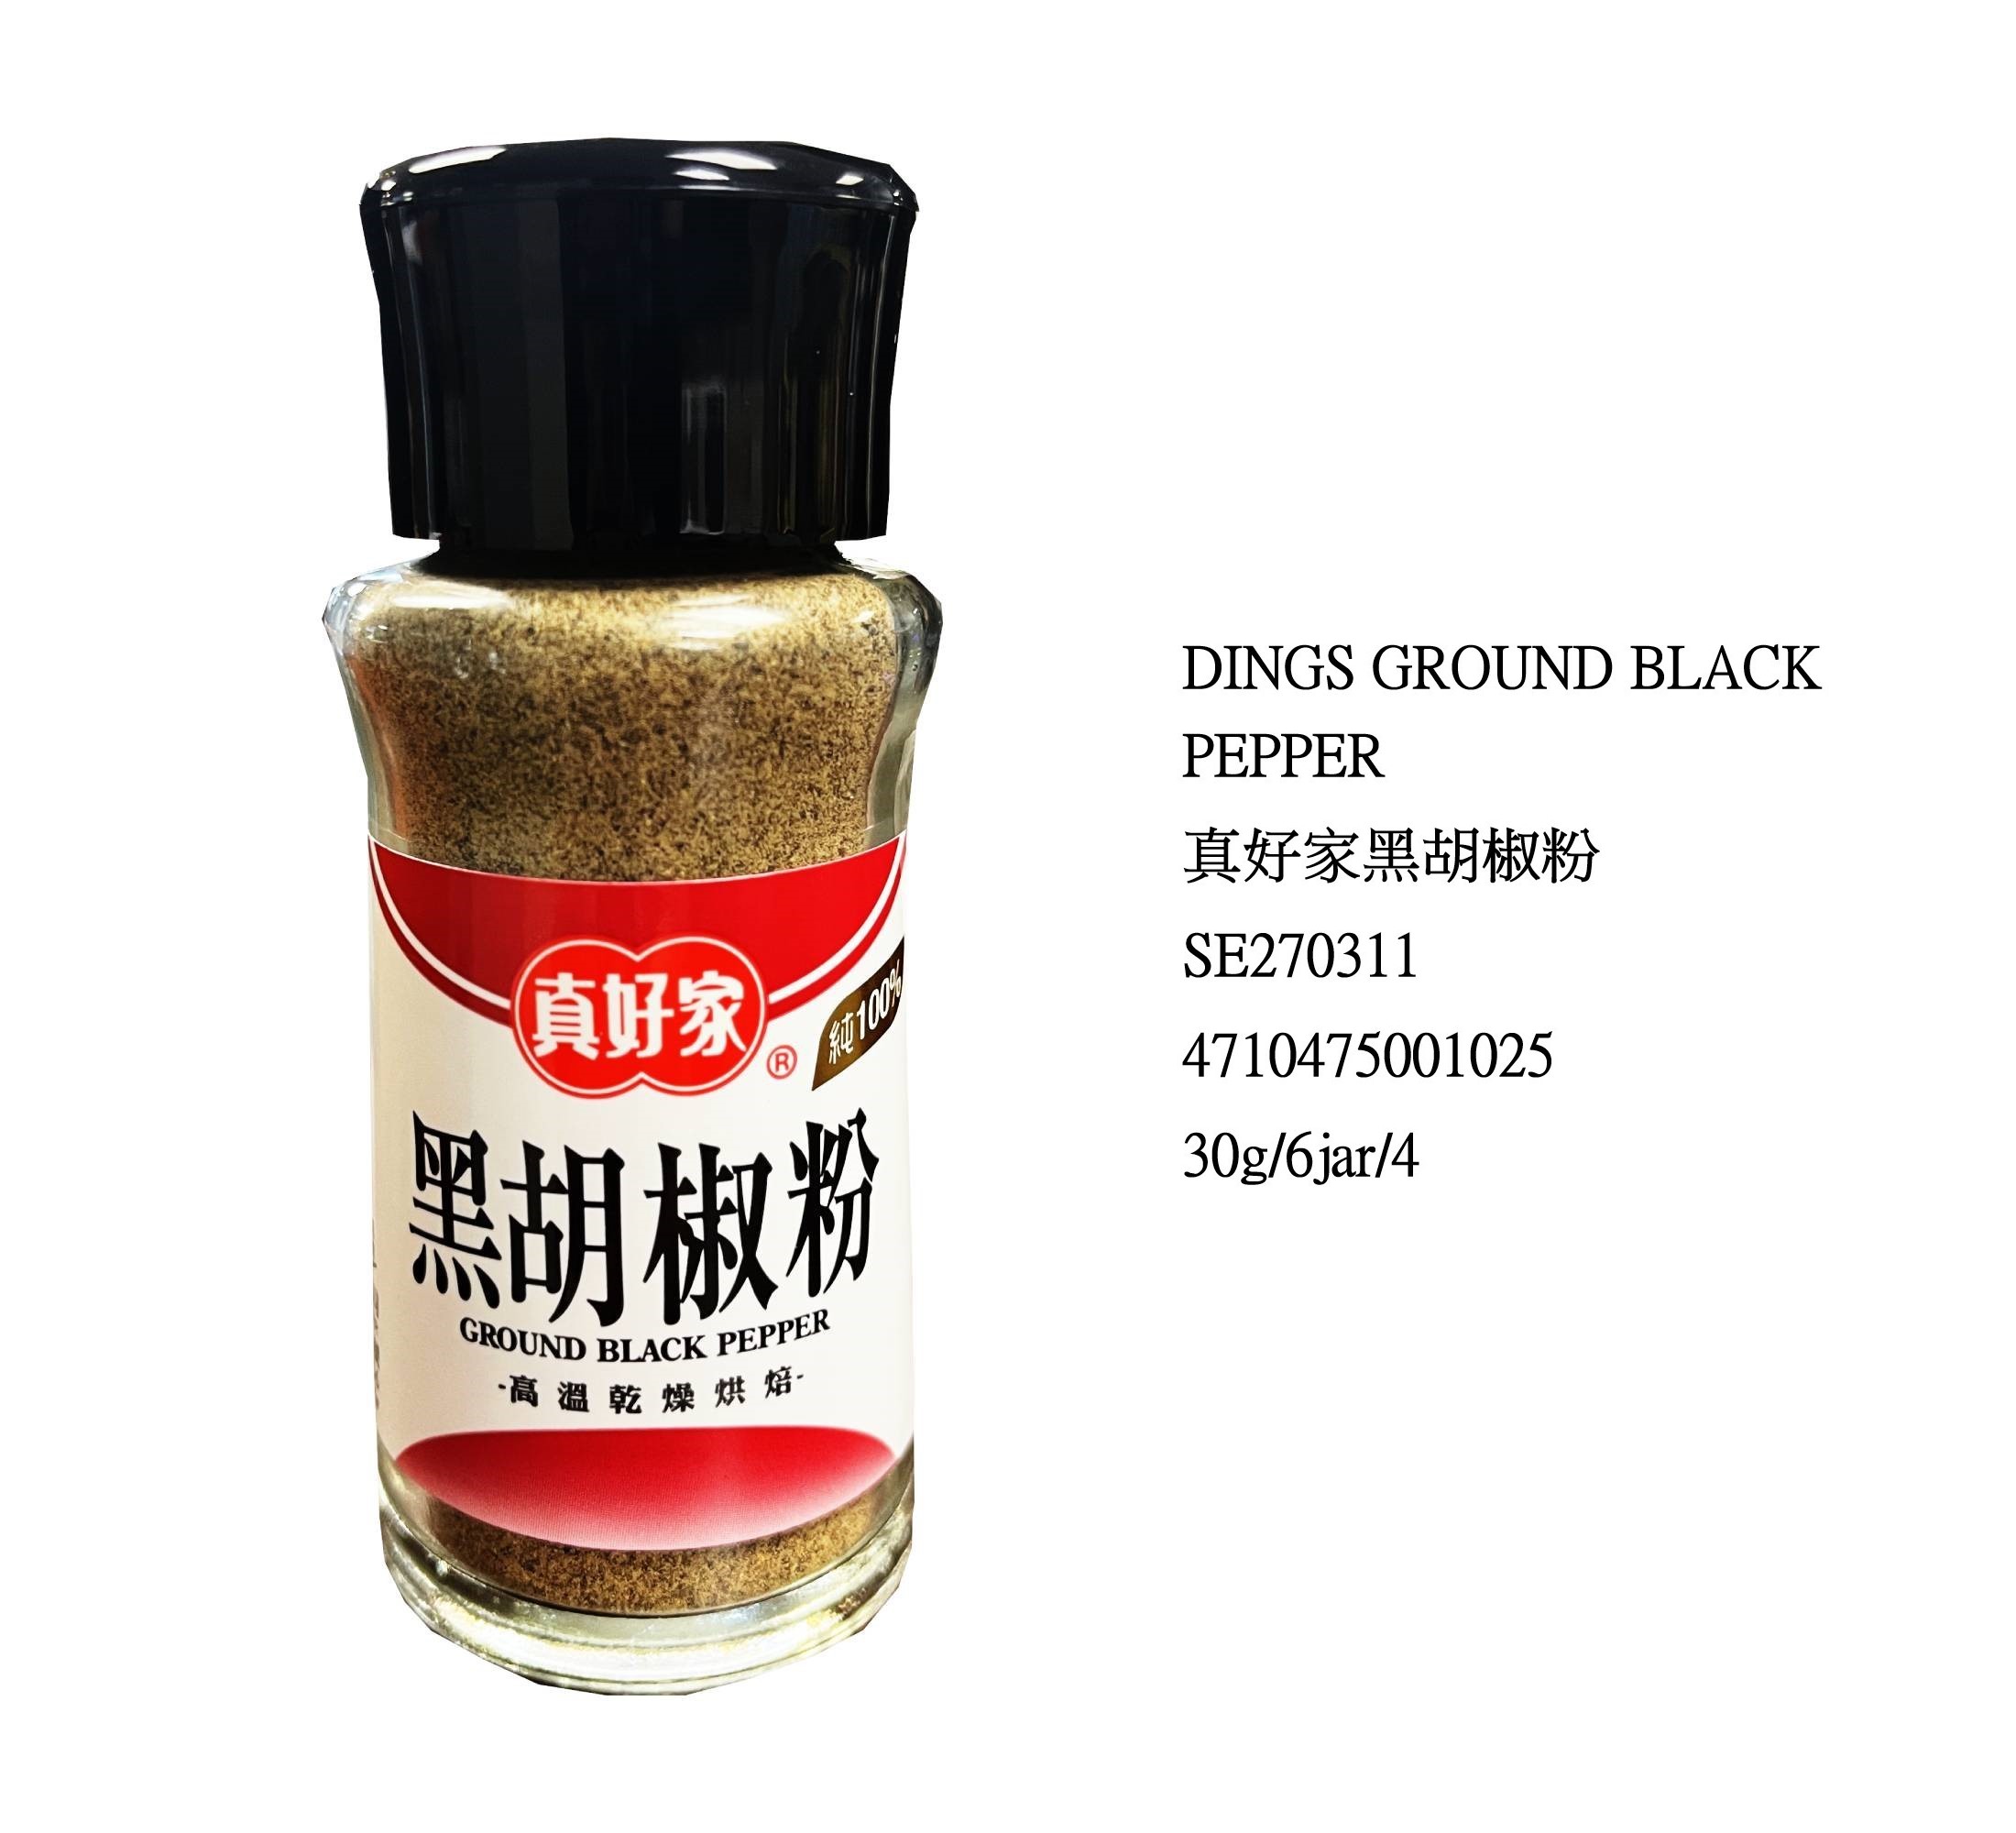 DINGS GROUND BLACK PEPPER SE270311